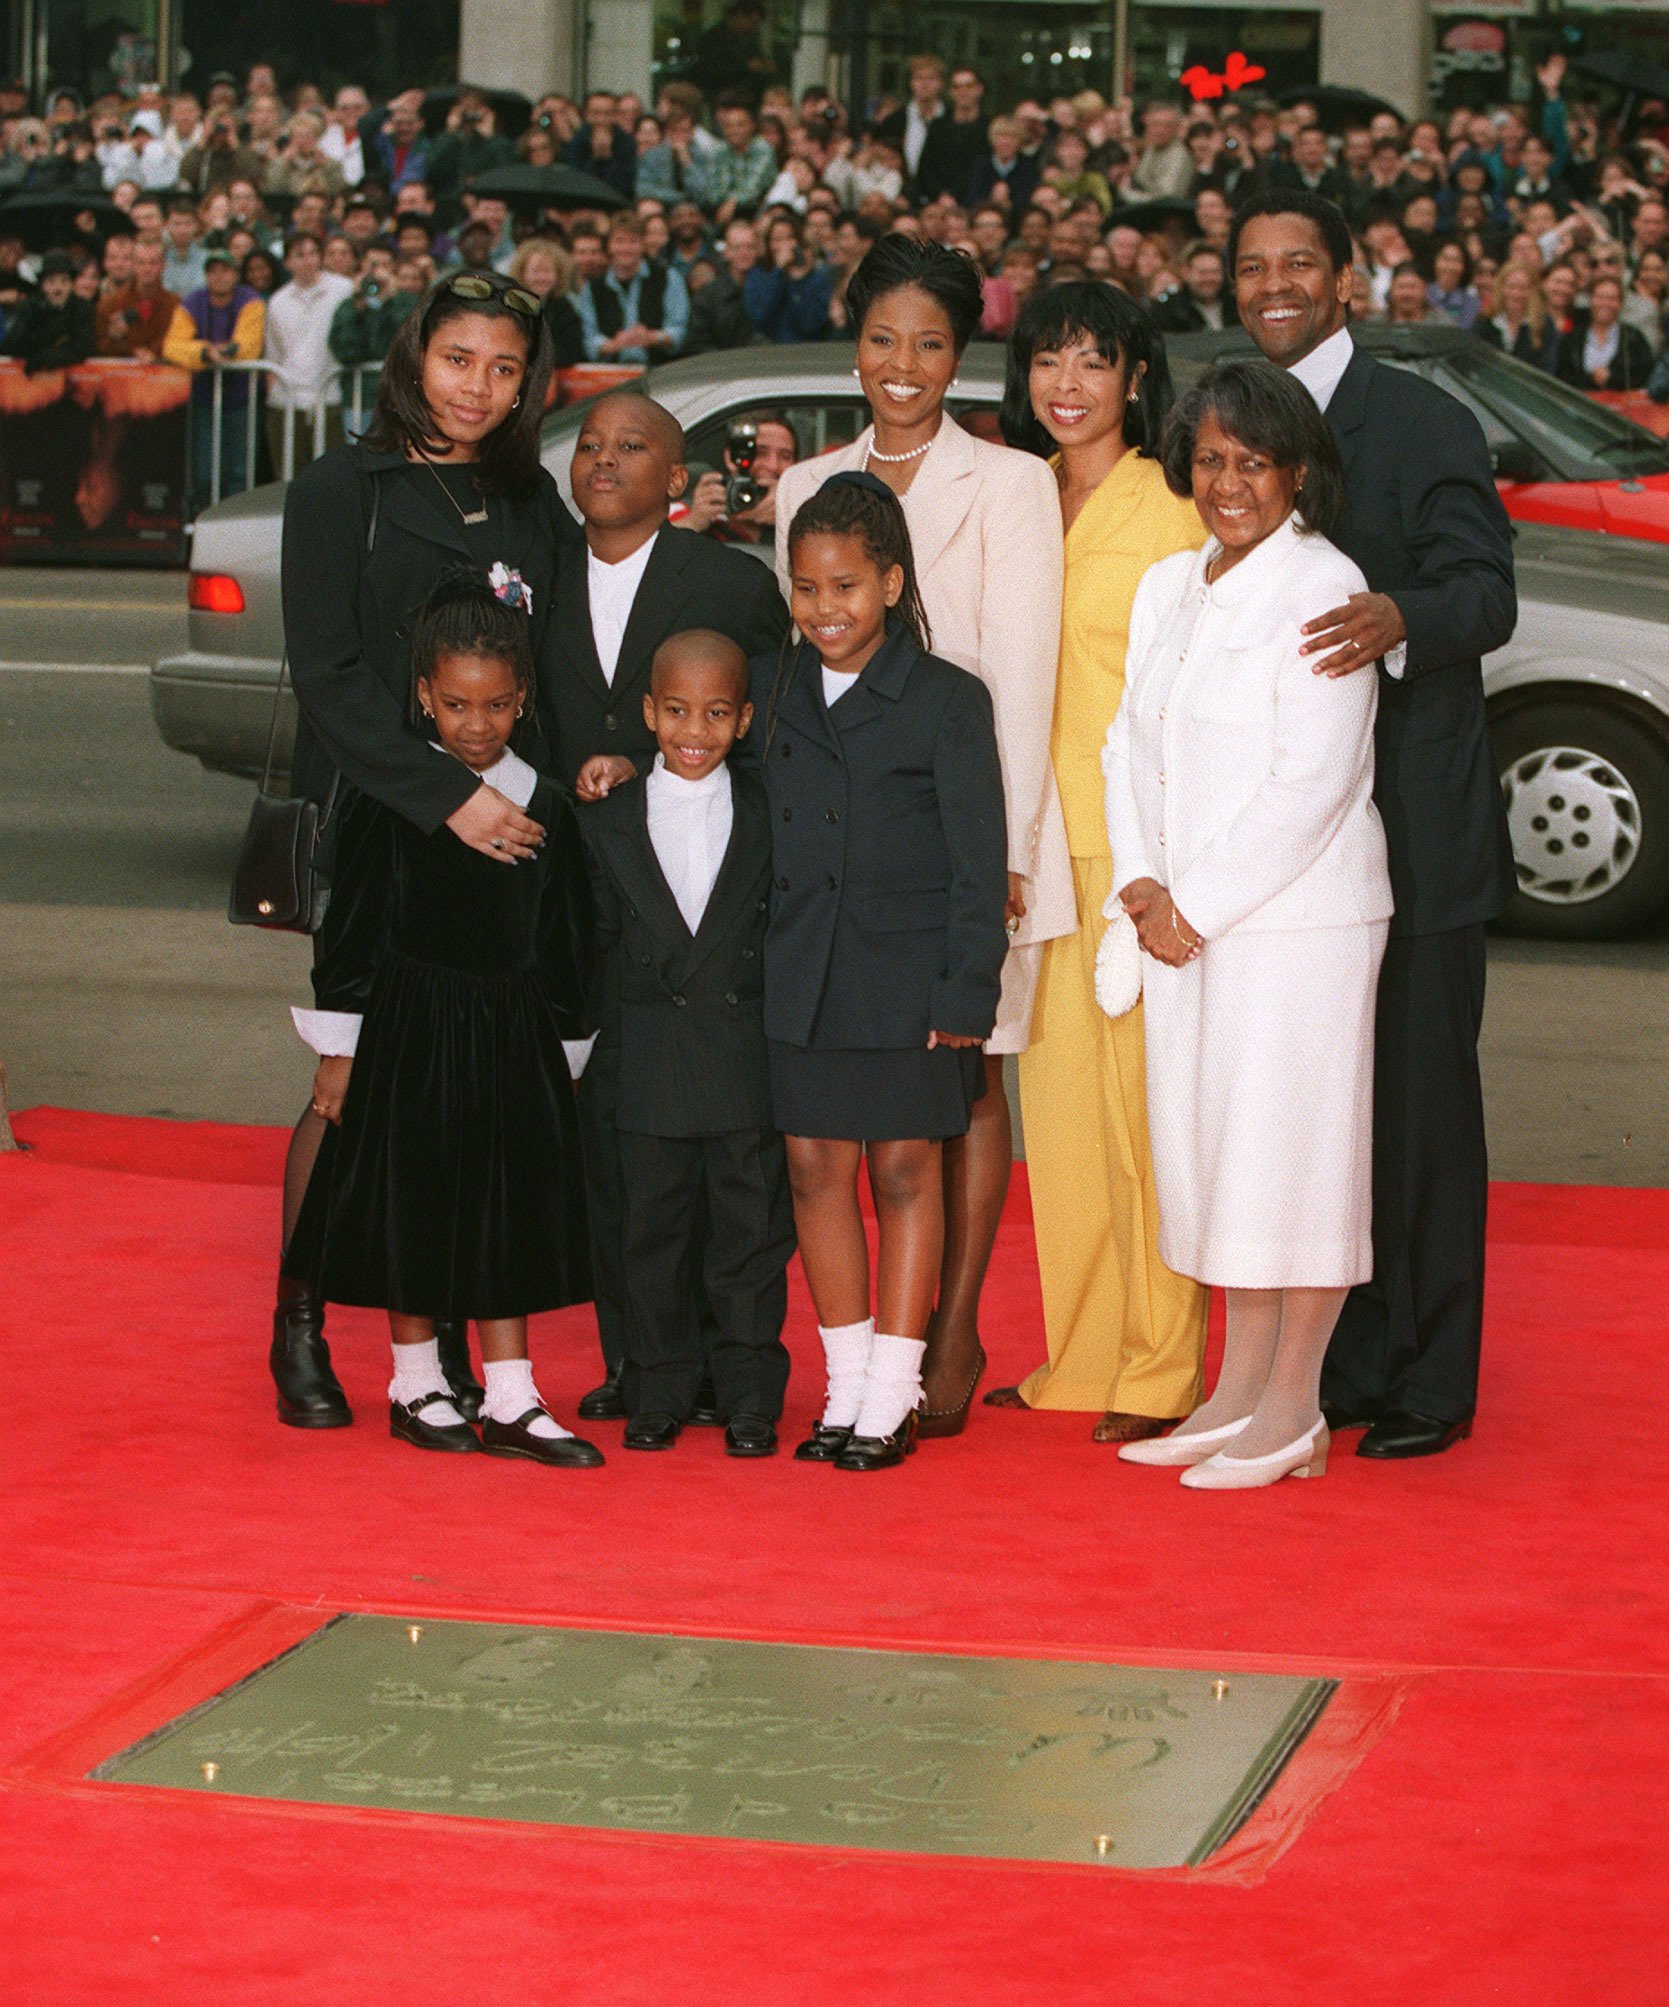 El actor Denzel Washington y su esposa, la actriz Pauletta Washington, fotografiados con sus hijos y familiares en la Ceremonia de la Huella de Washington el 16 de enero de 1998 ┃Foto: Getty Images